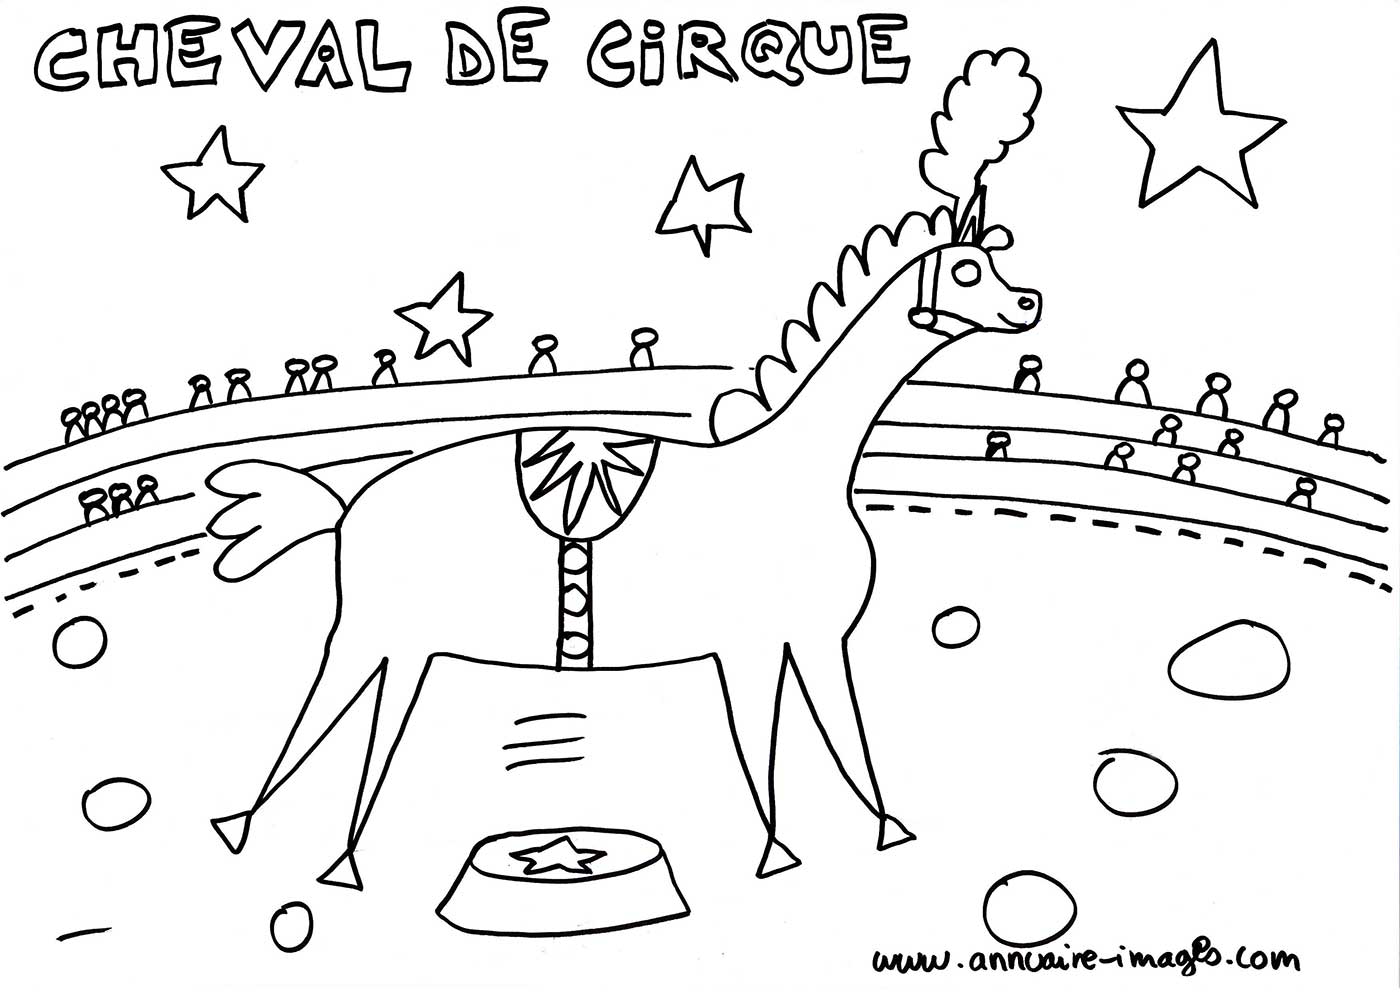 Cheval de cirque